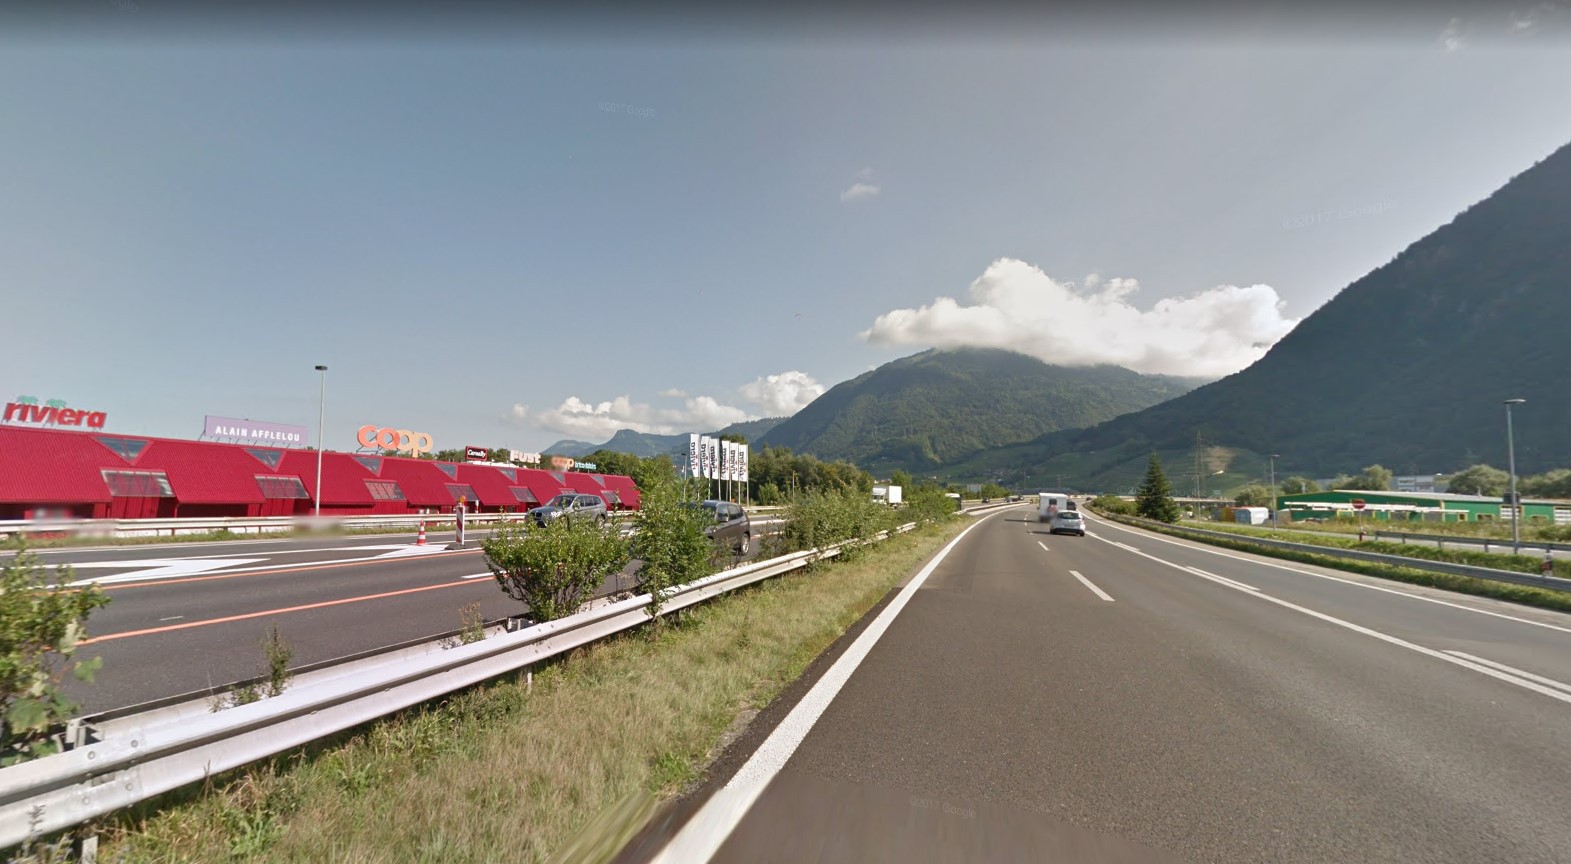 La sortie et rentrée d'autoroute de Villeneuve, côté montagne, seront fermées les nuits du 19 au 21 août. 